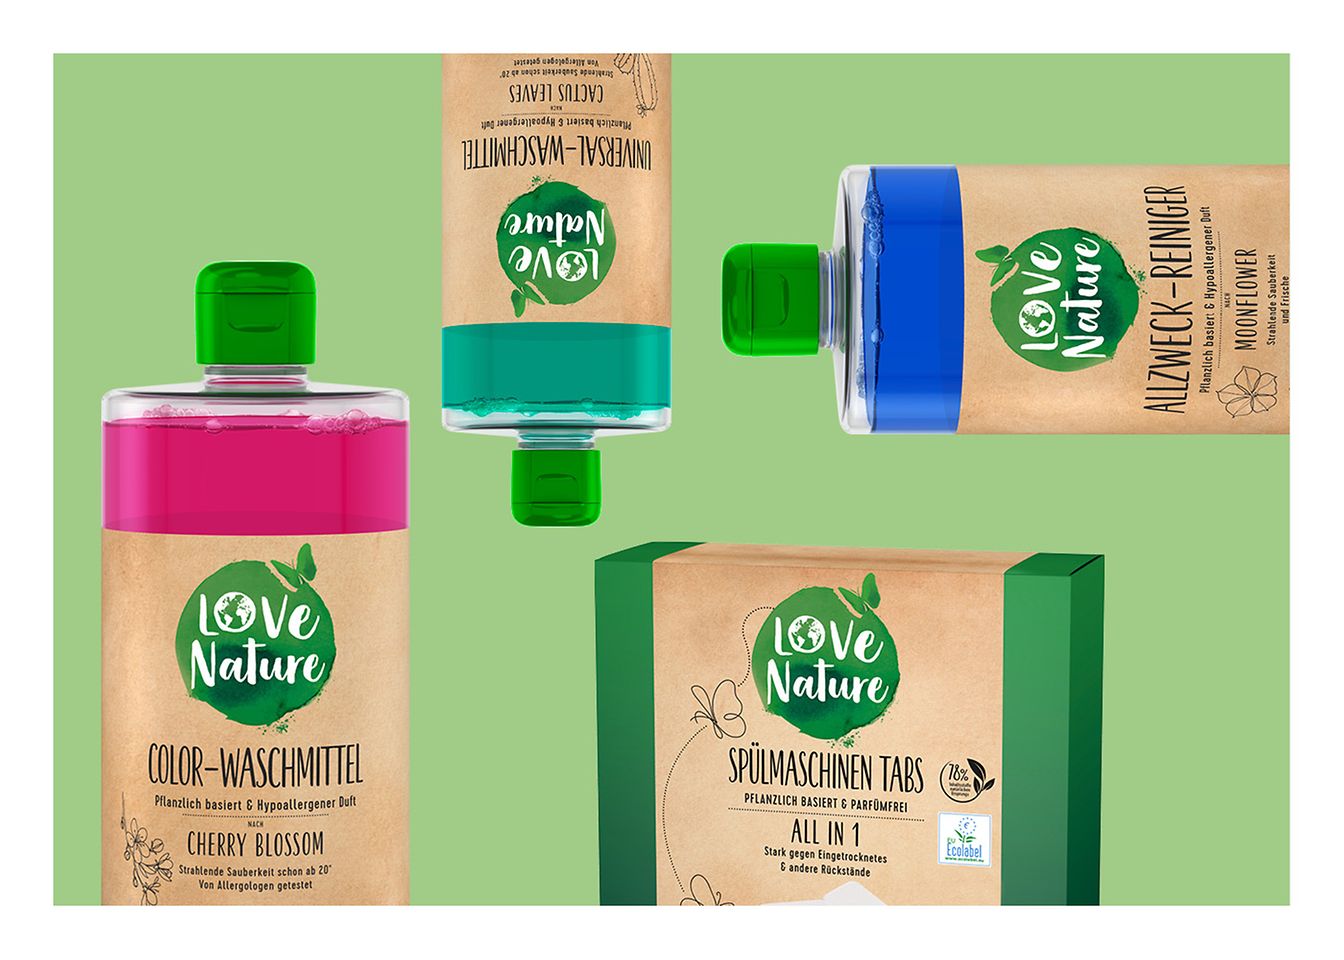 Love Nature Produkte auf einem grünen Hintergrund